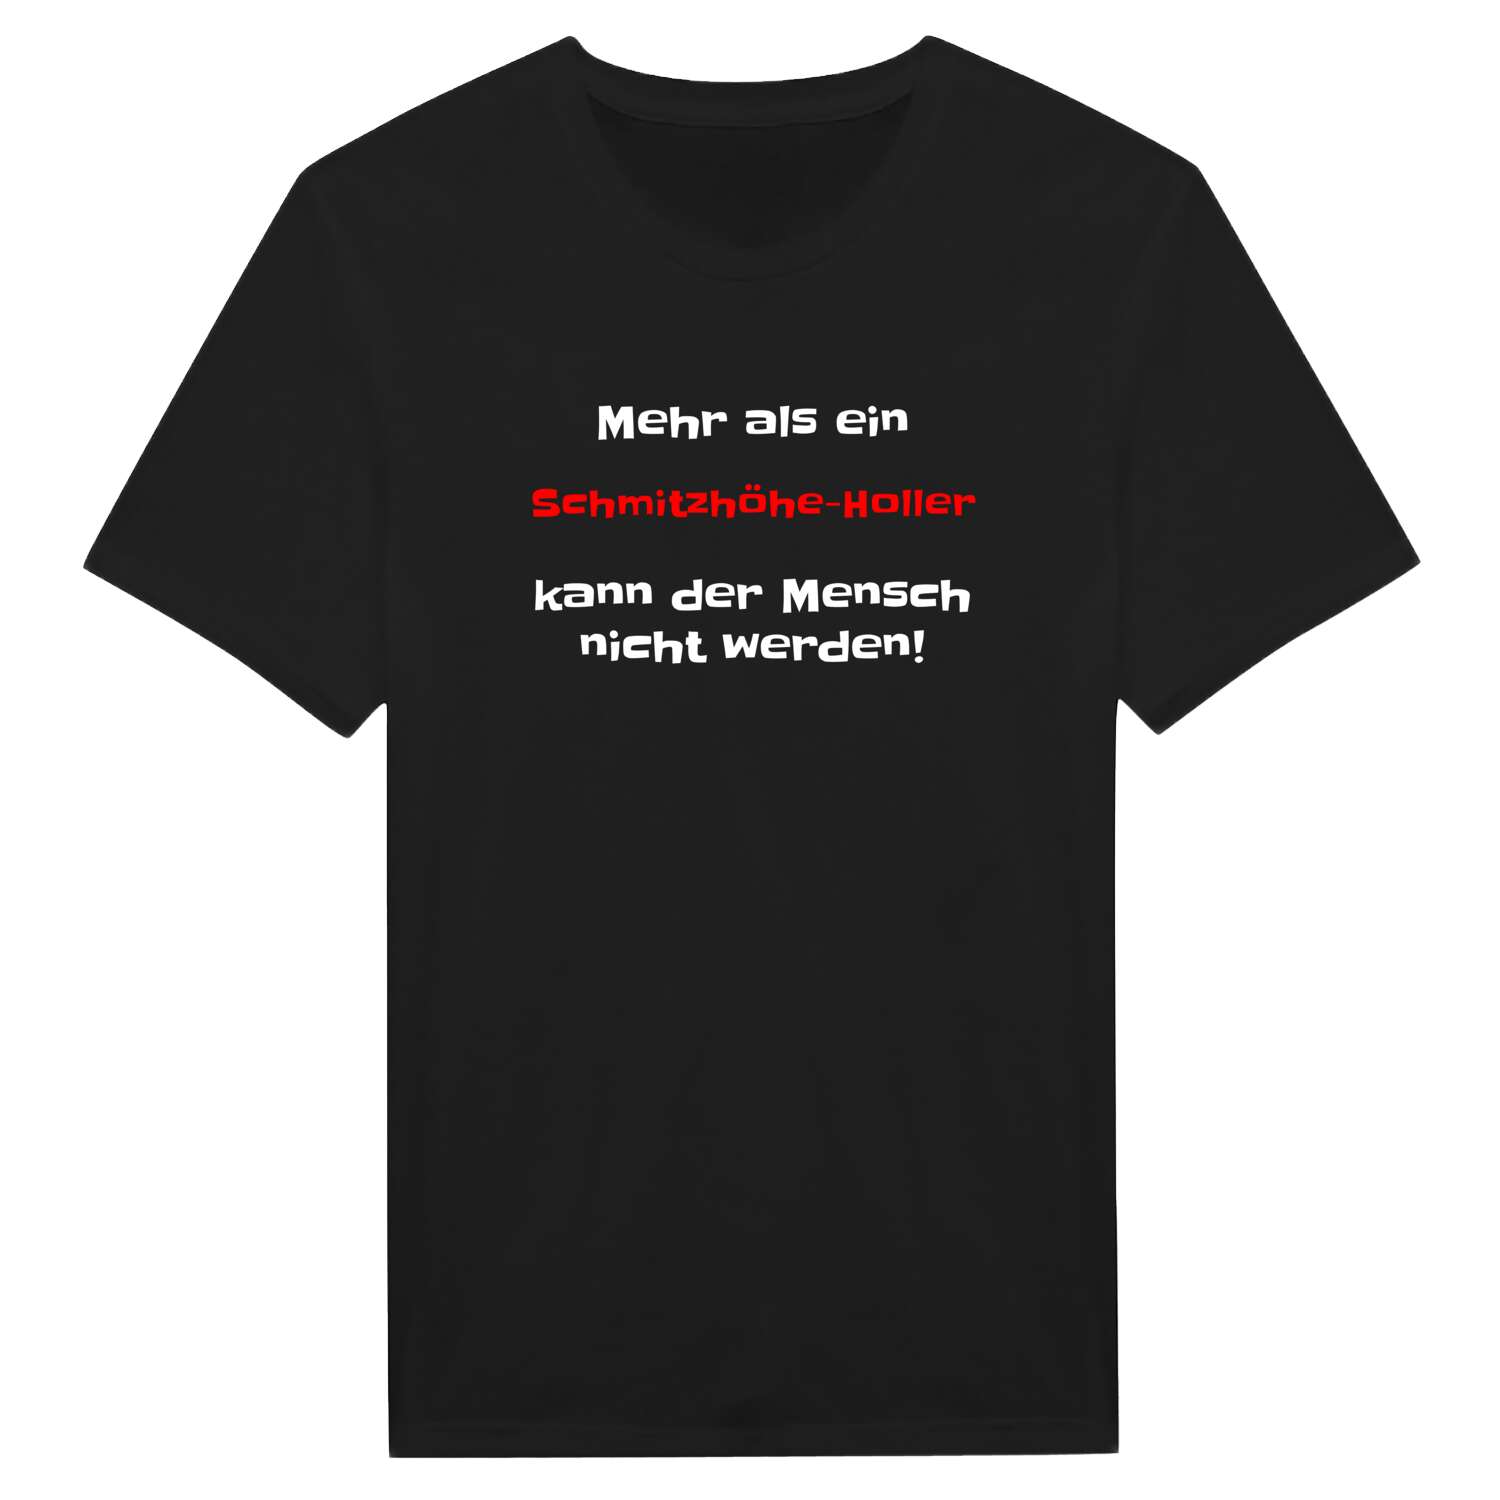 Schmitzhöhe-Holl T-Shirt »Mehr als ein«